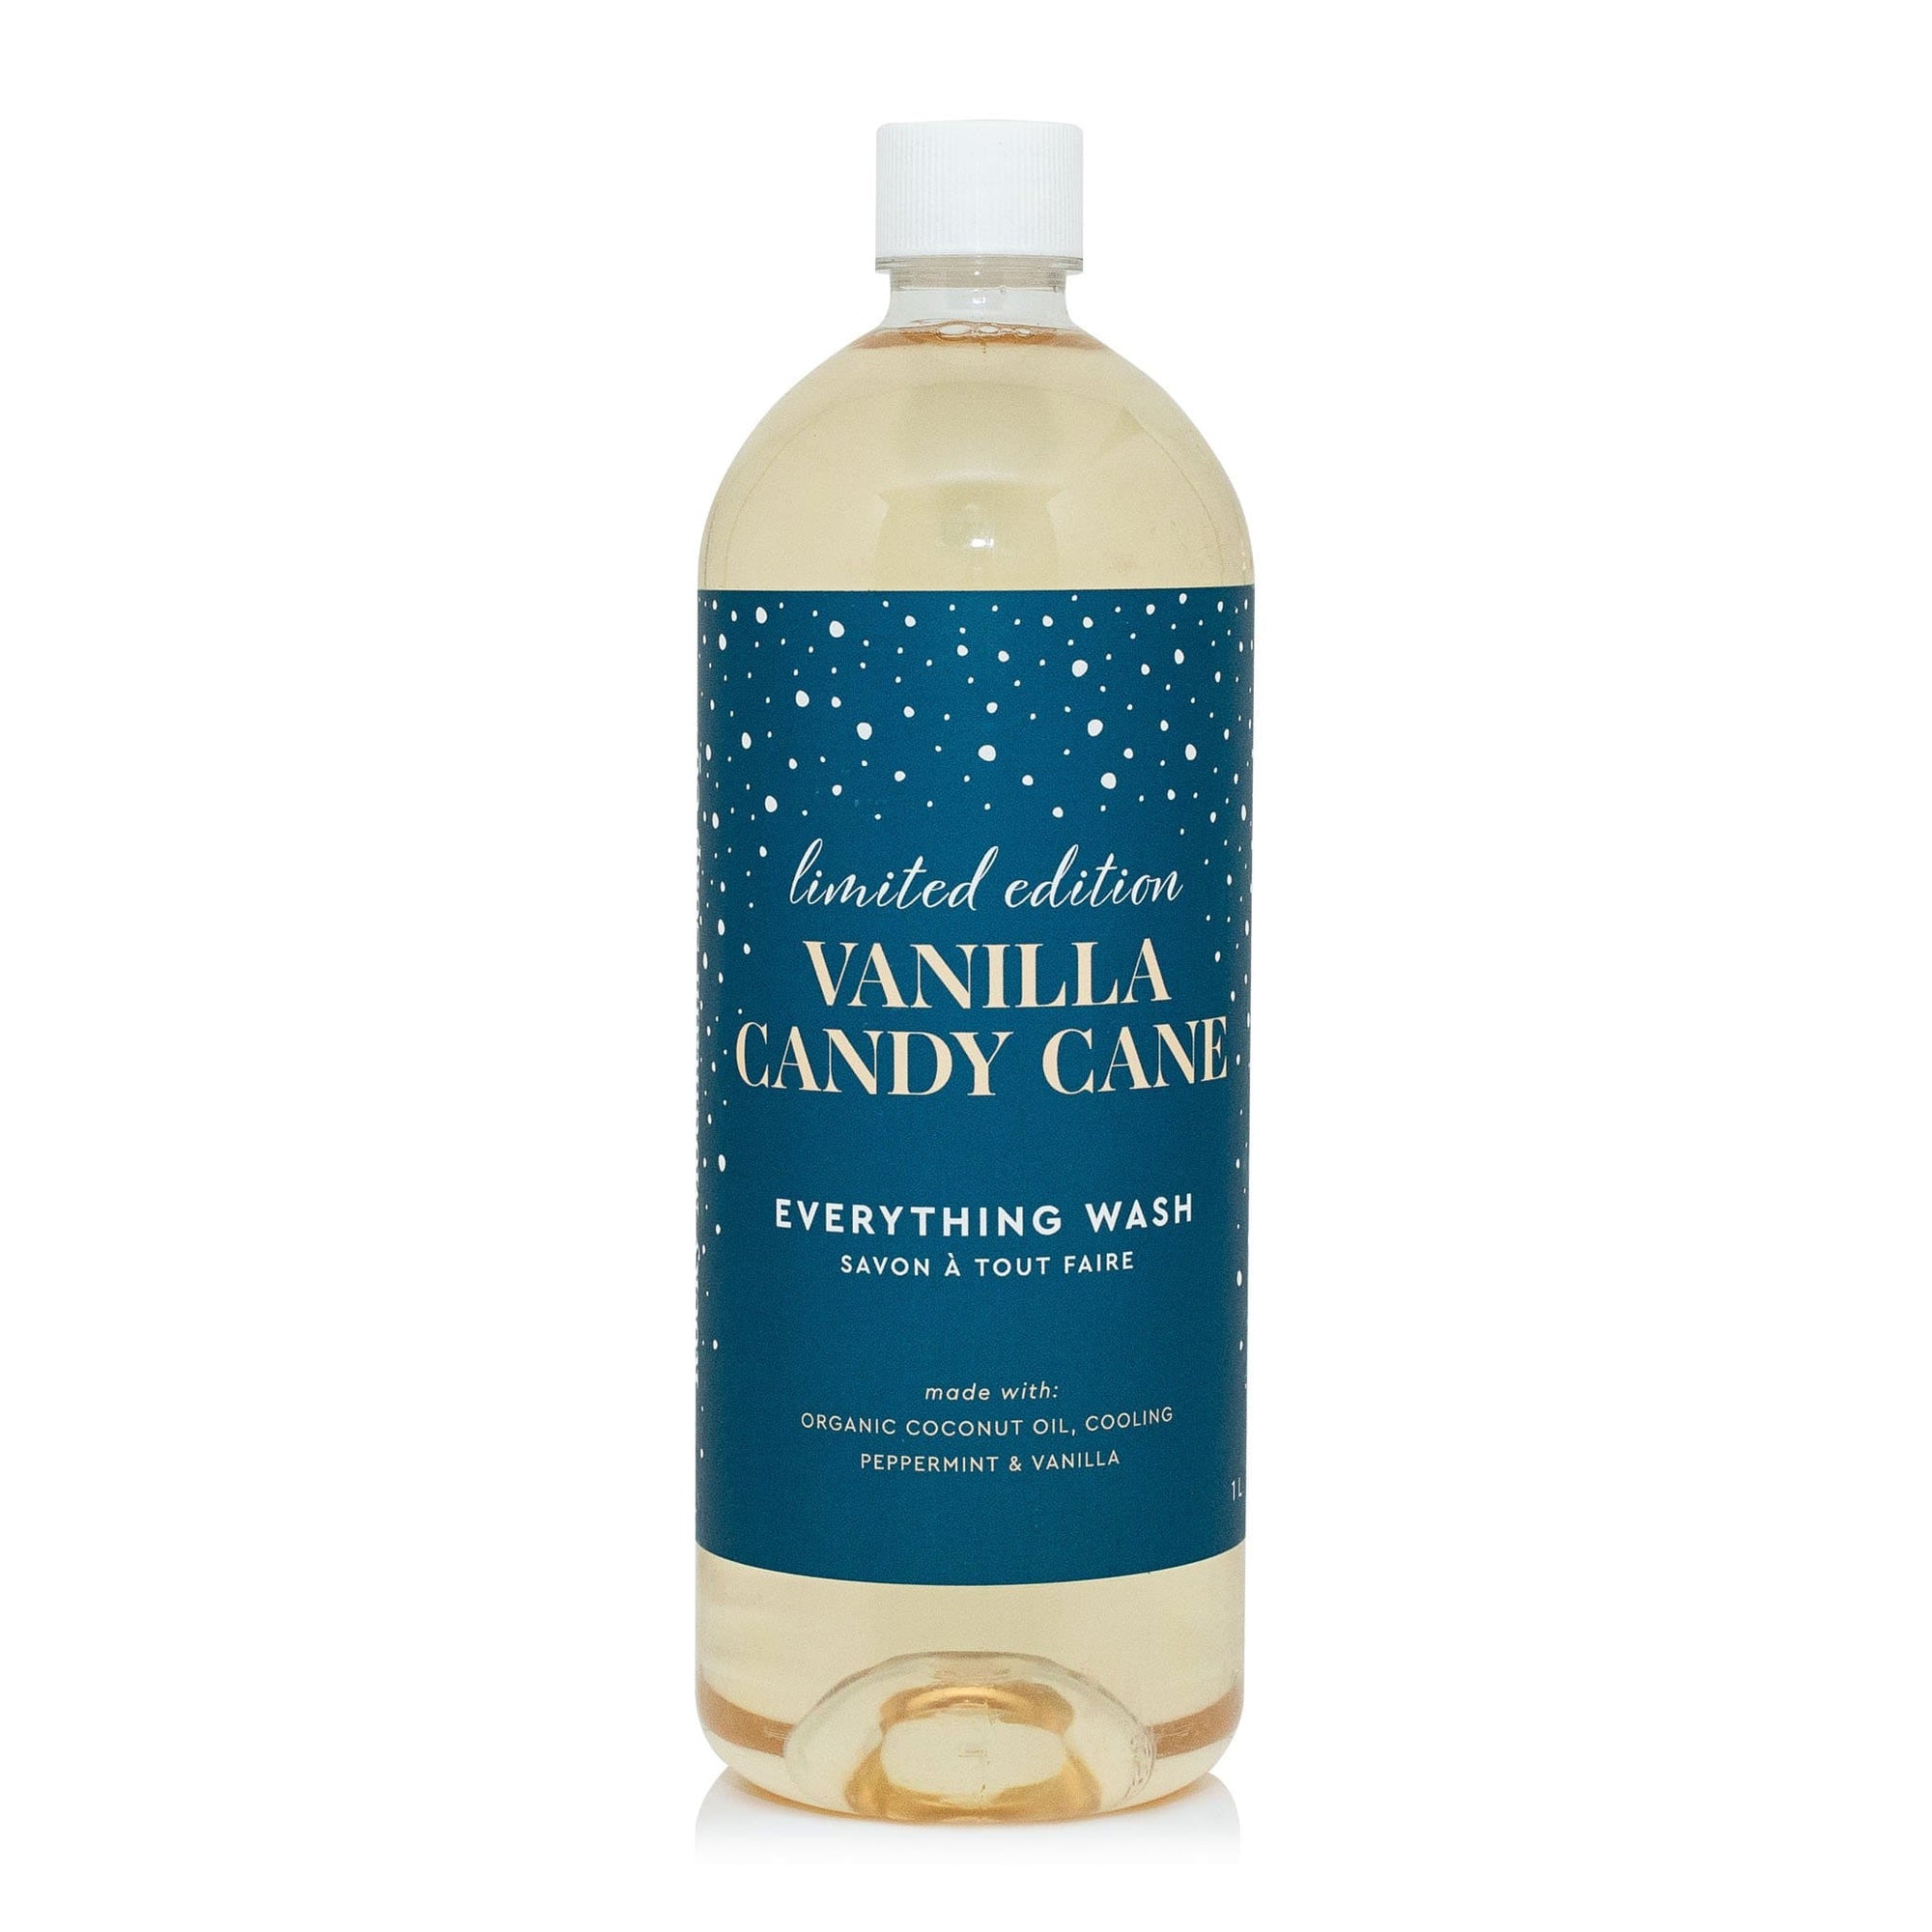 Vanilla Candy Cane Everything Wash